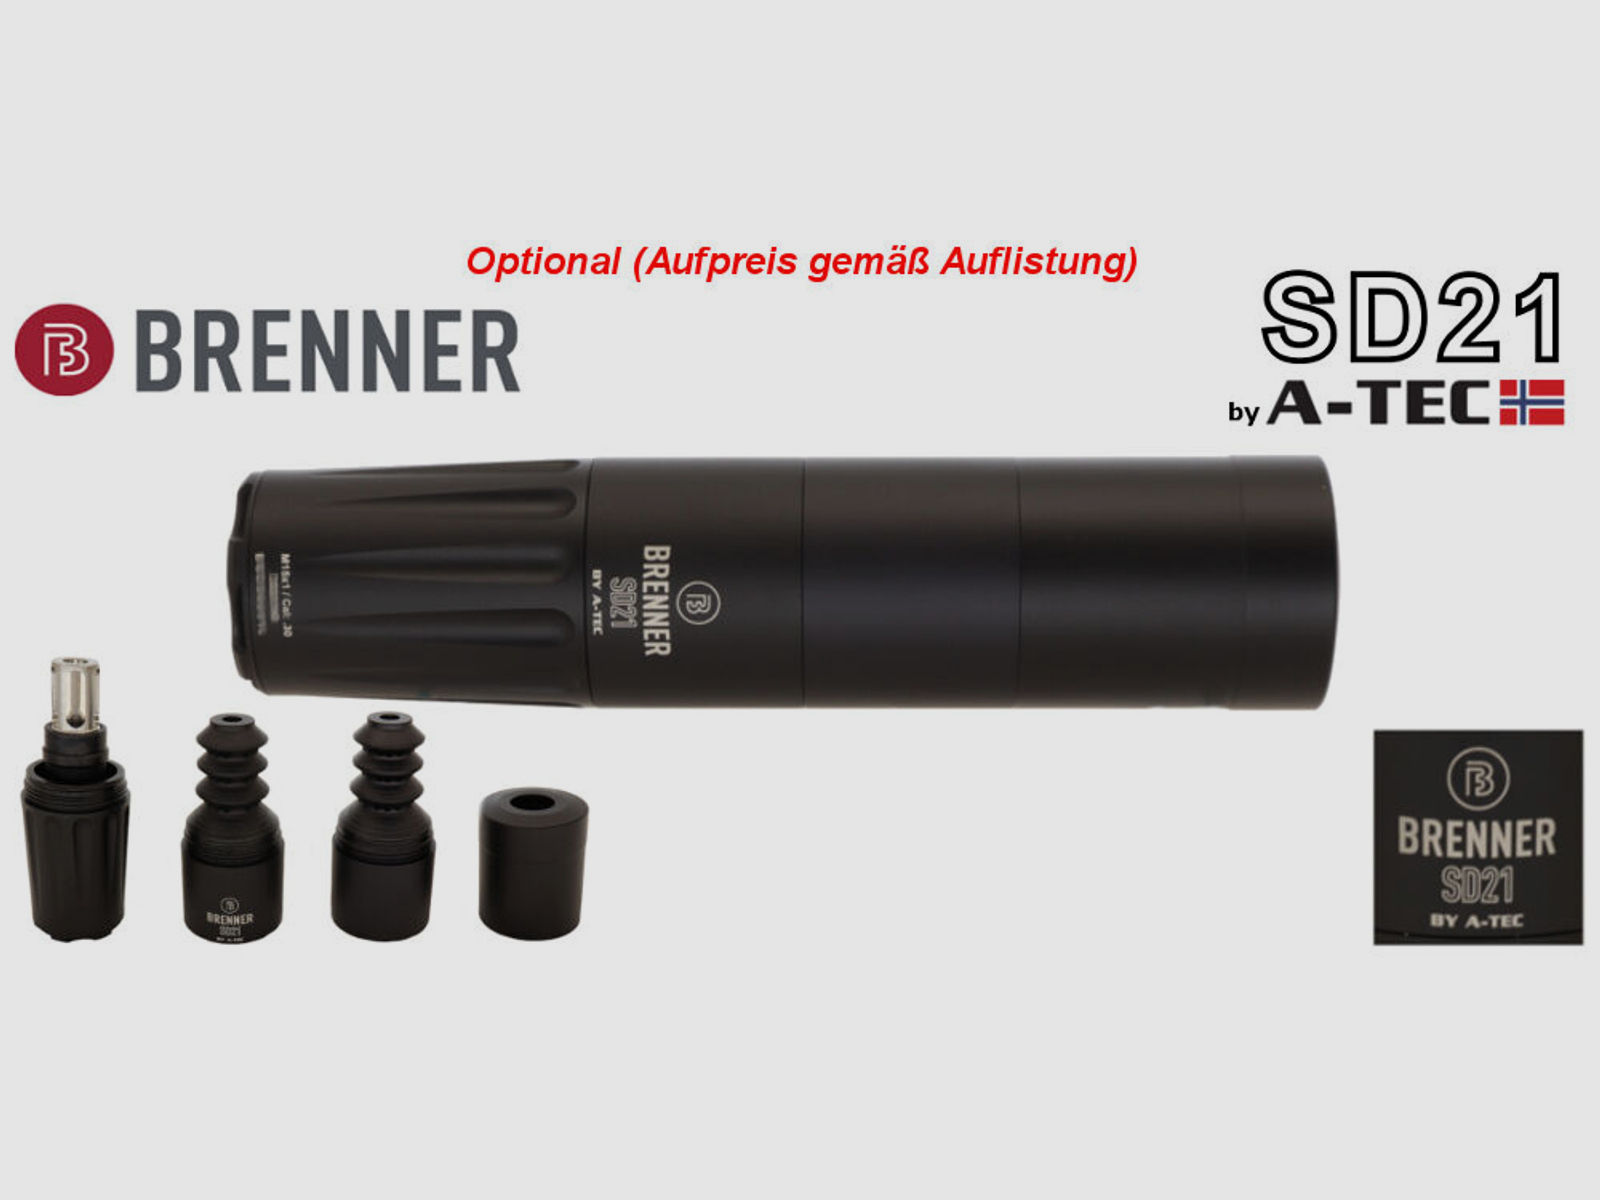 Bergara	 B14 B&H Prohunter LINKS Lochschaft Zeiss 2.5-15x56 fertig montiert / Optional: Brenner Schalldämpfer